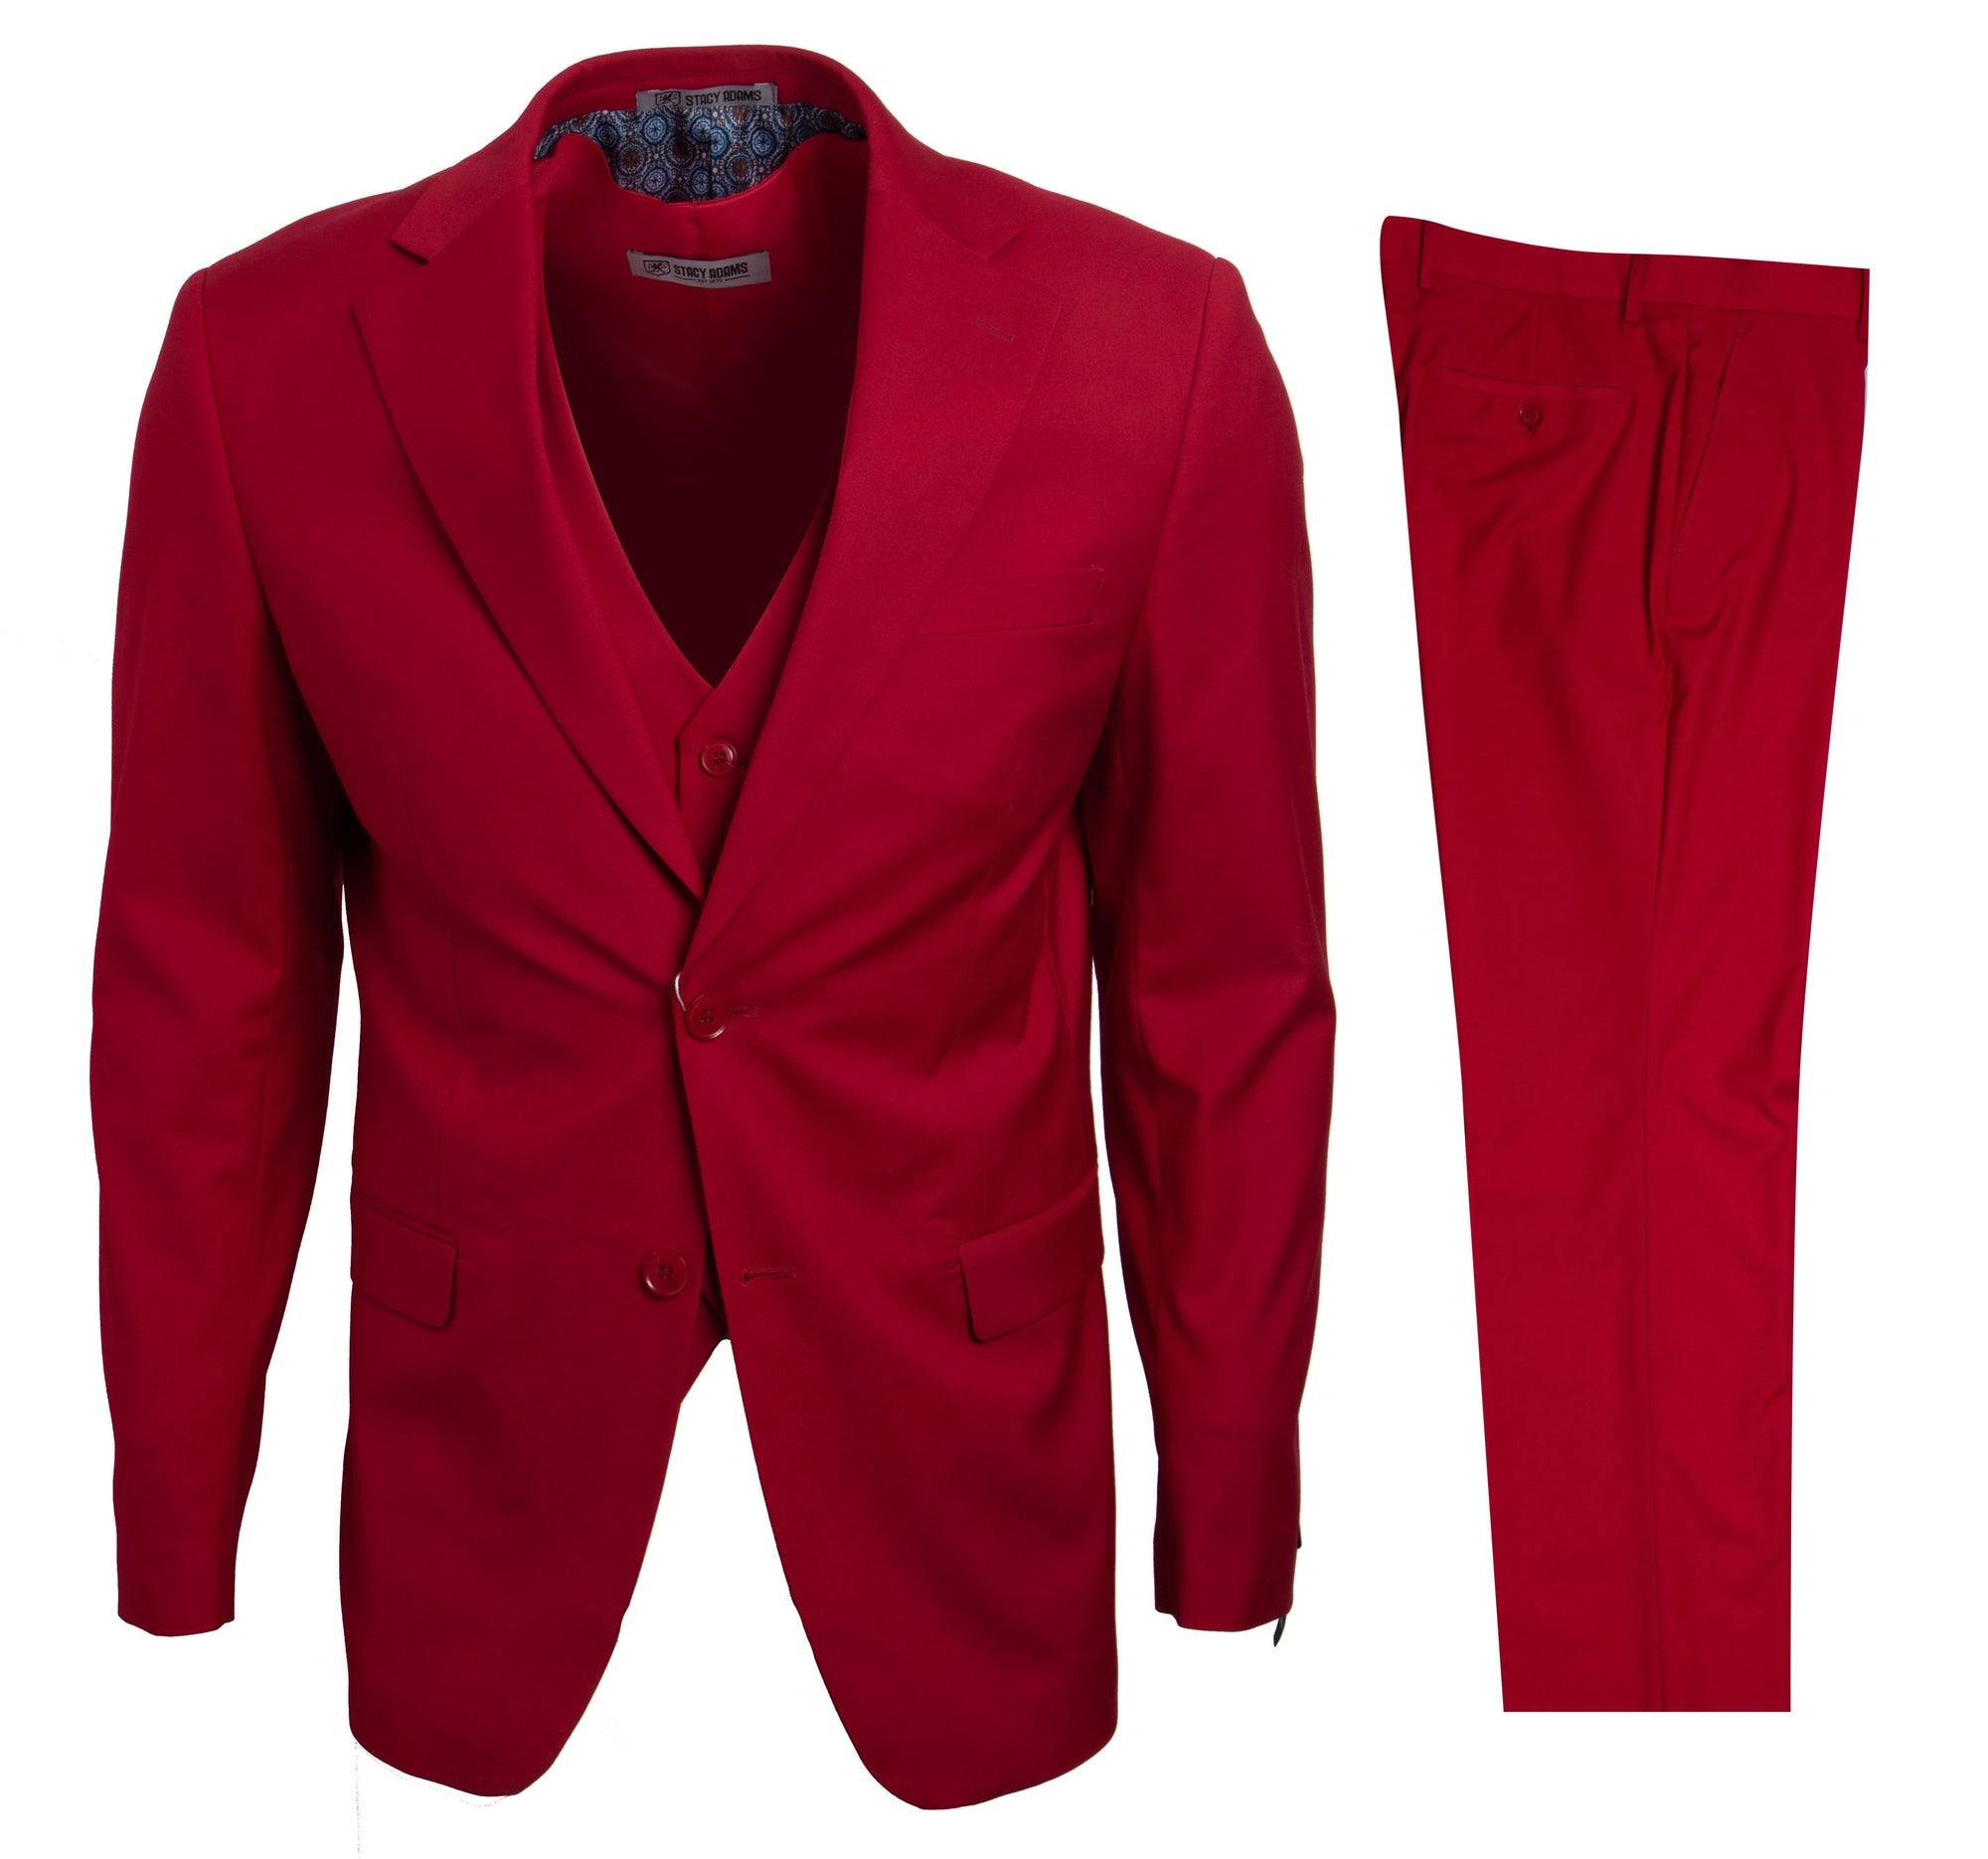 Men's Red Stacy Adams Suit